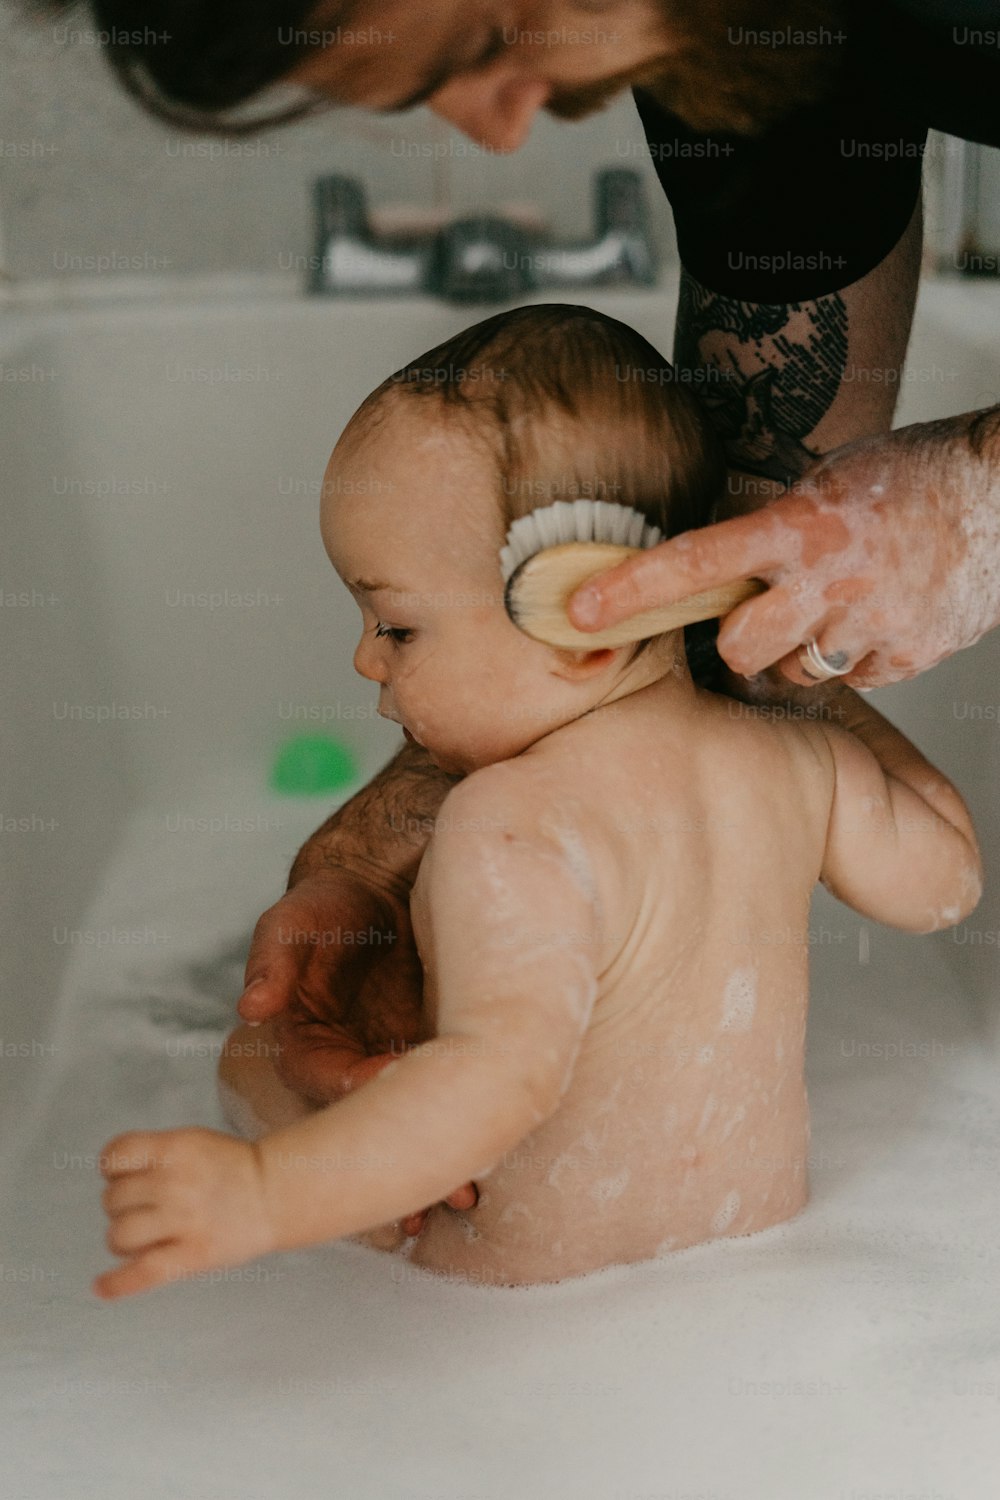 ein Baby, das in einer Badewanne sitzt und mit einer Bürste gewaschen wird